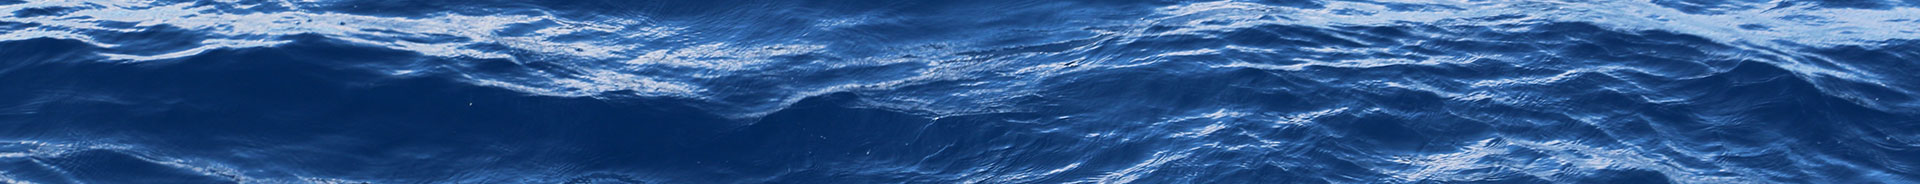 NOAA teams with Schmidt Ocean Institute to boost public understanding of the ocean